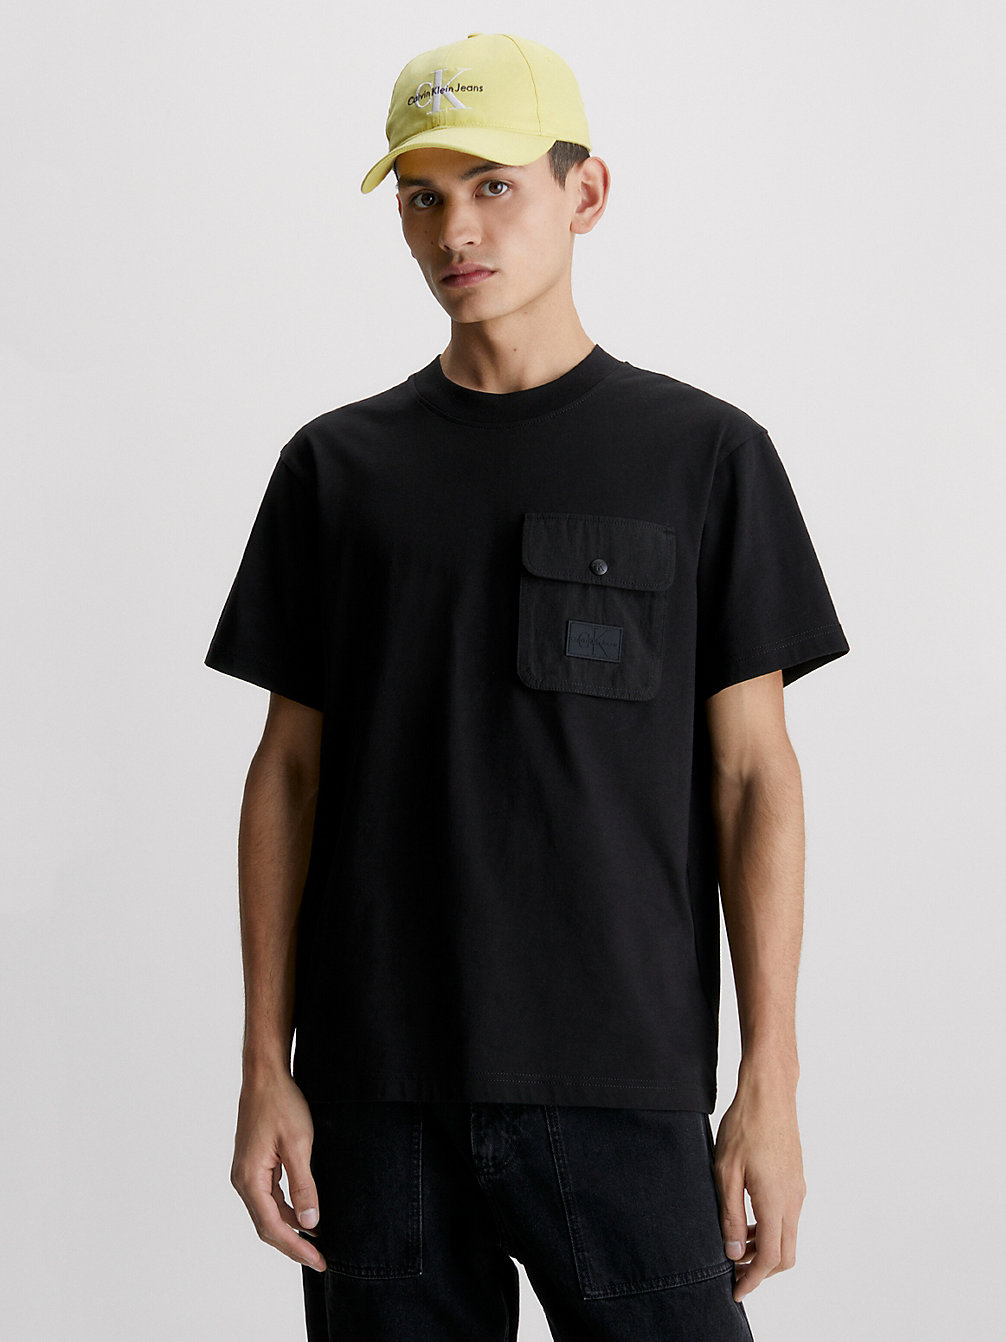 CK BLACK > Luźny T-Shirt Z Kieszonką > undefined Mężczyźni - Calvin Klein